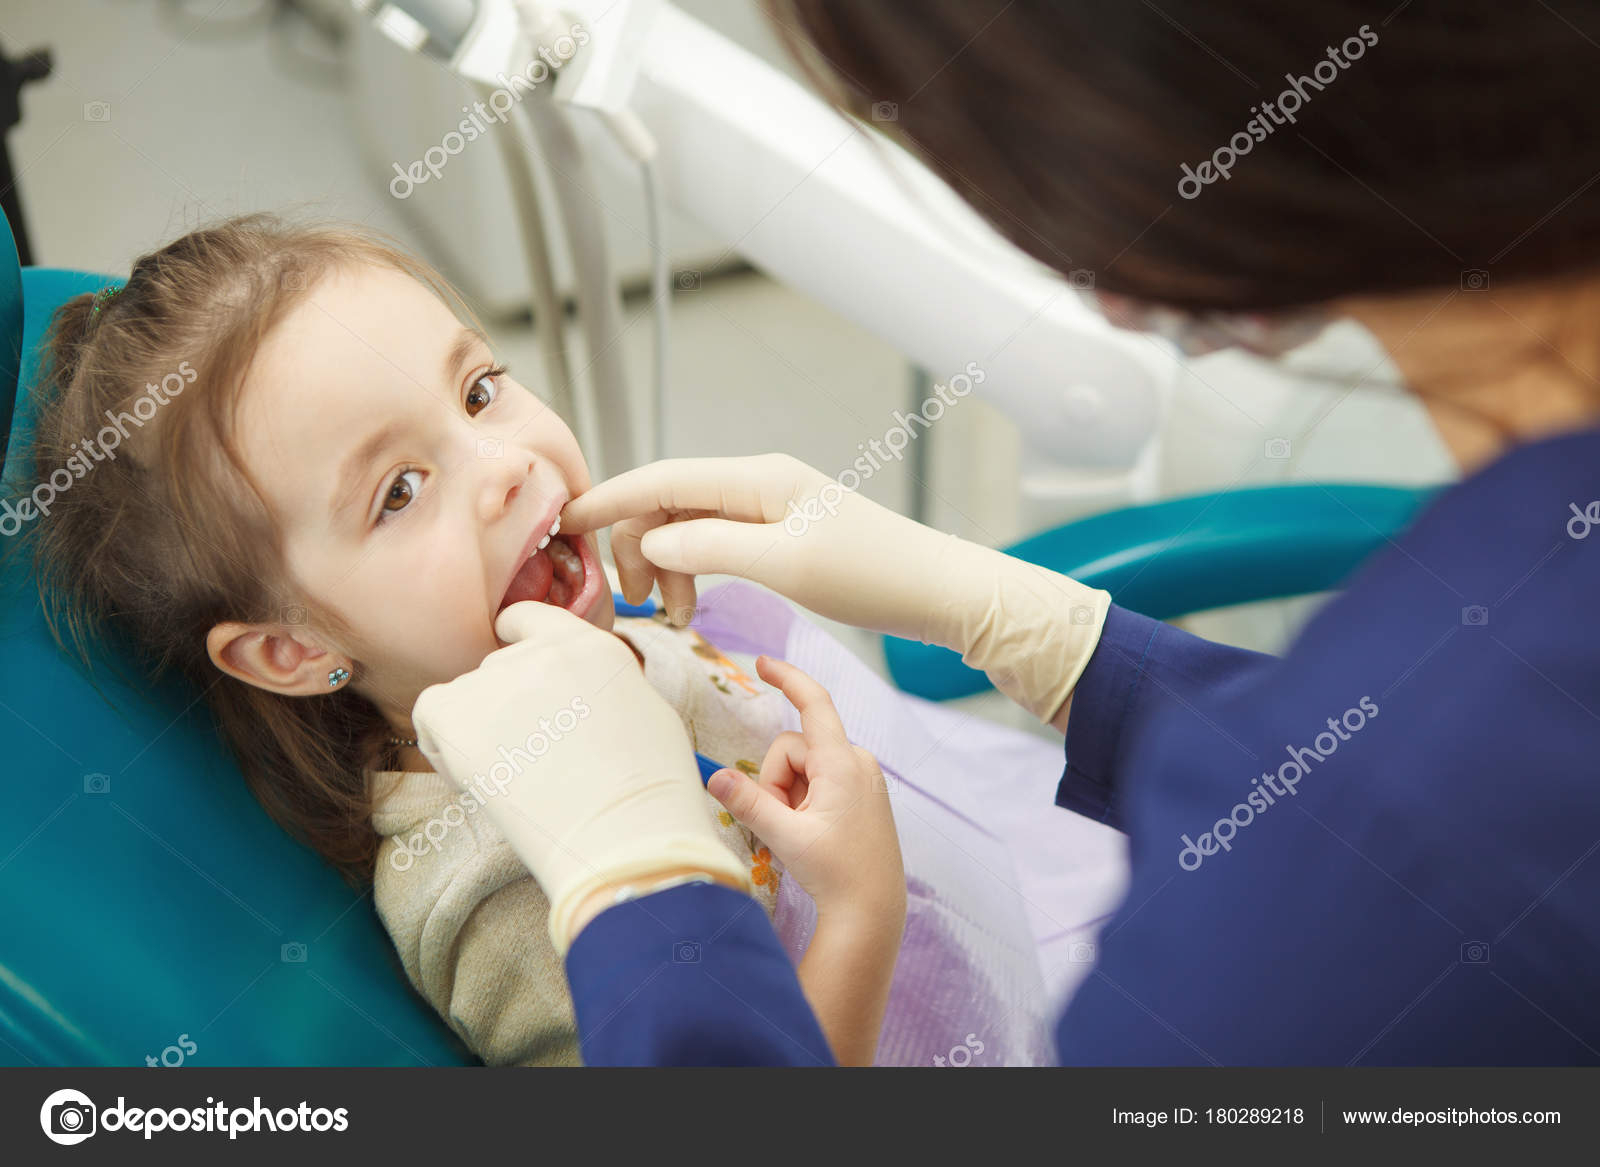 Zahnarzt In Gummihandschuhen Kontrolliert Mund Von Kind mit Bilder Kinder Mit Schlechten Zähnen